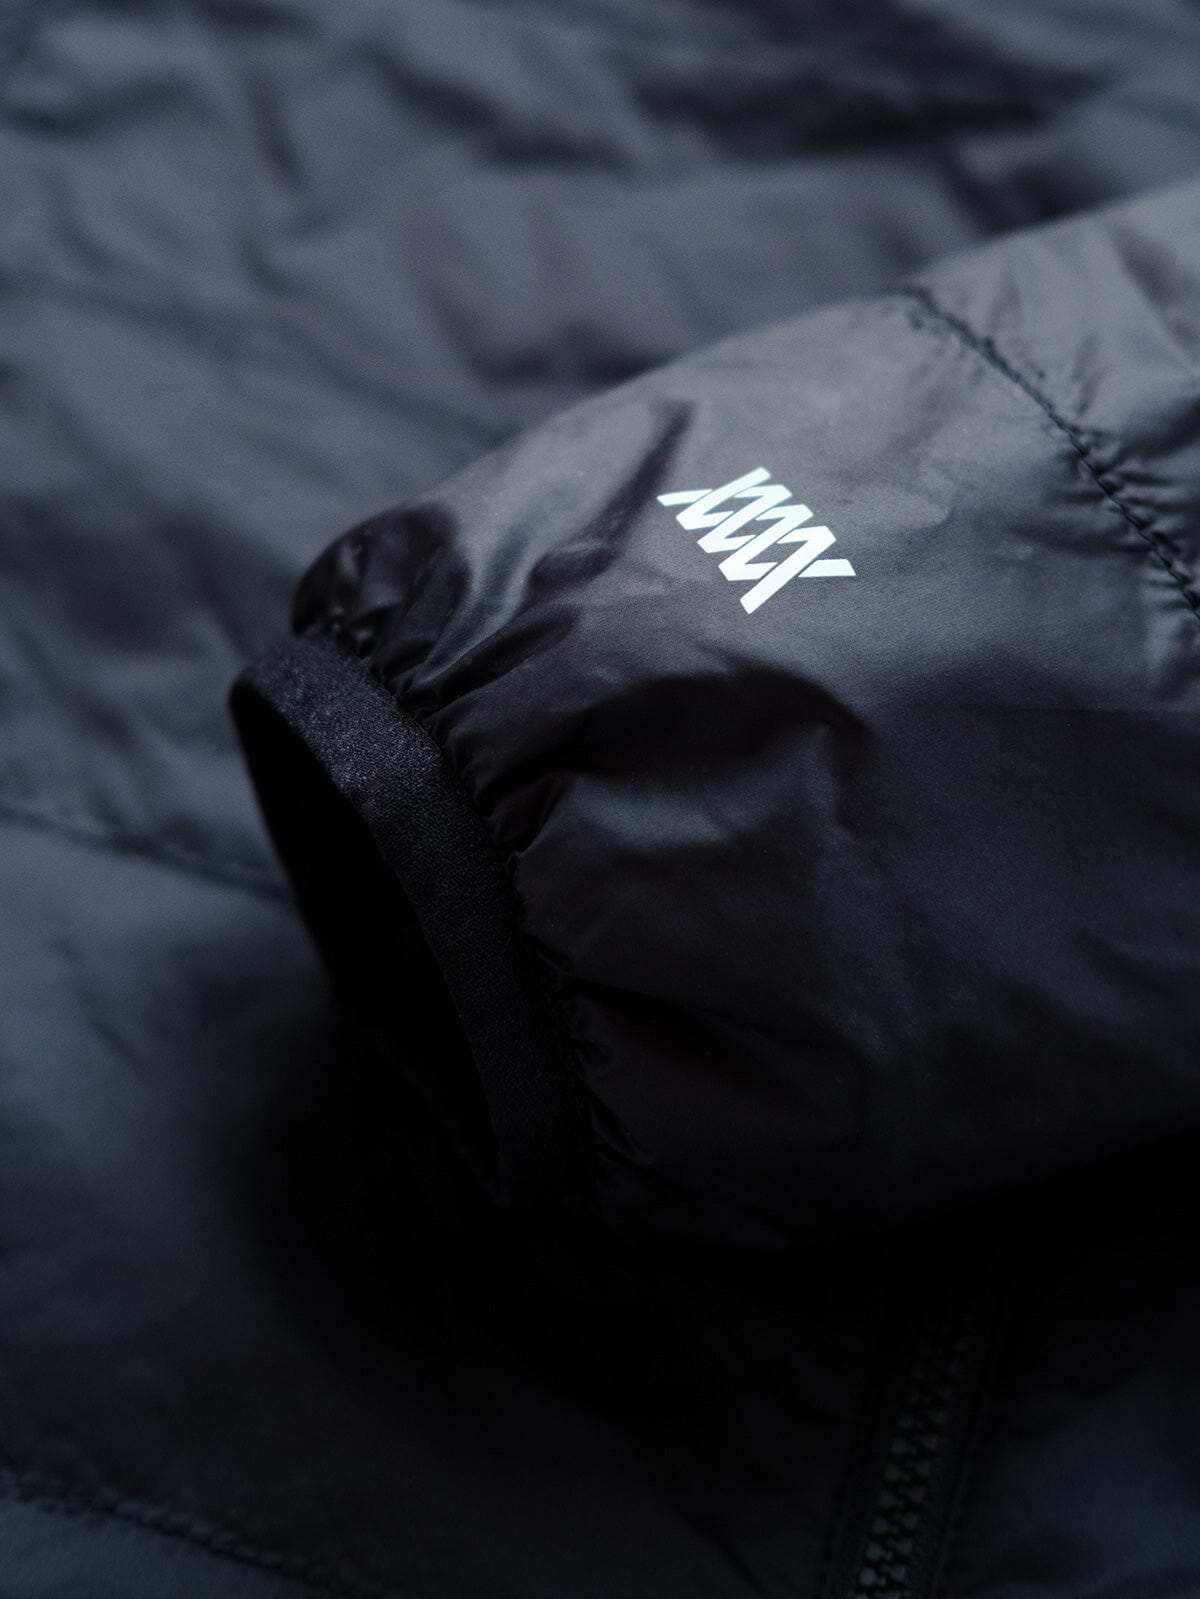 Onyx by Mission Workshop - Weatherproof Bags & Technical Apparel - San Francisco & Los Angeles - Construit pour durer - Garanti pour toujours